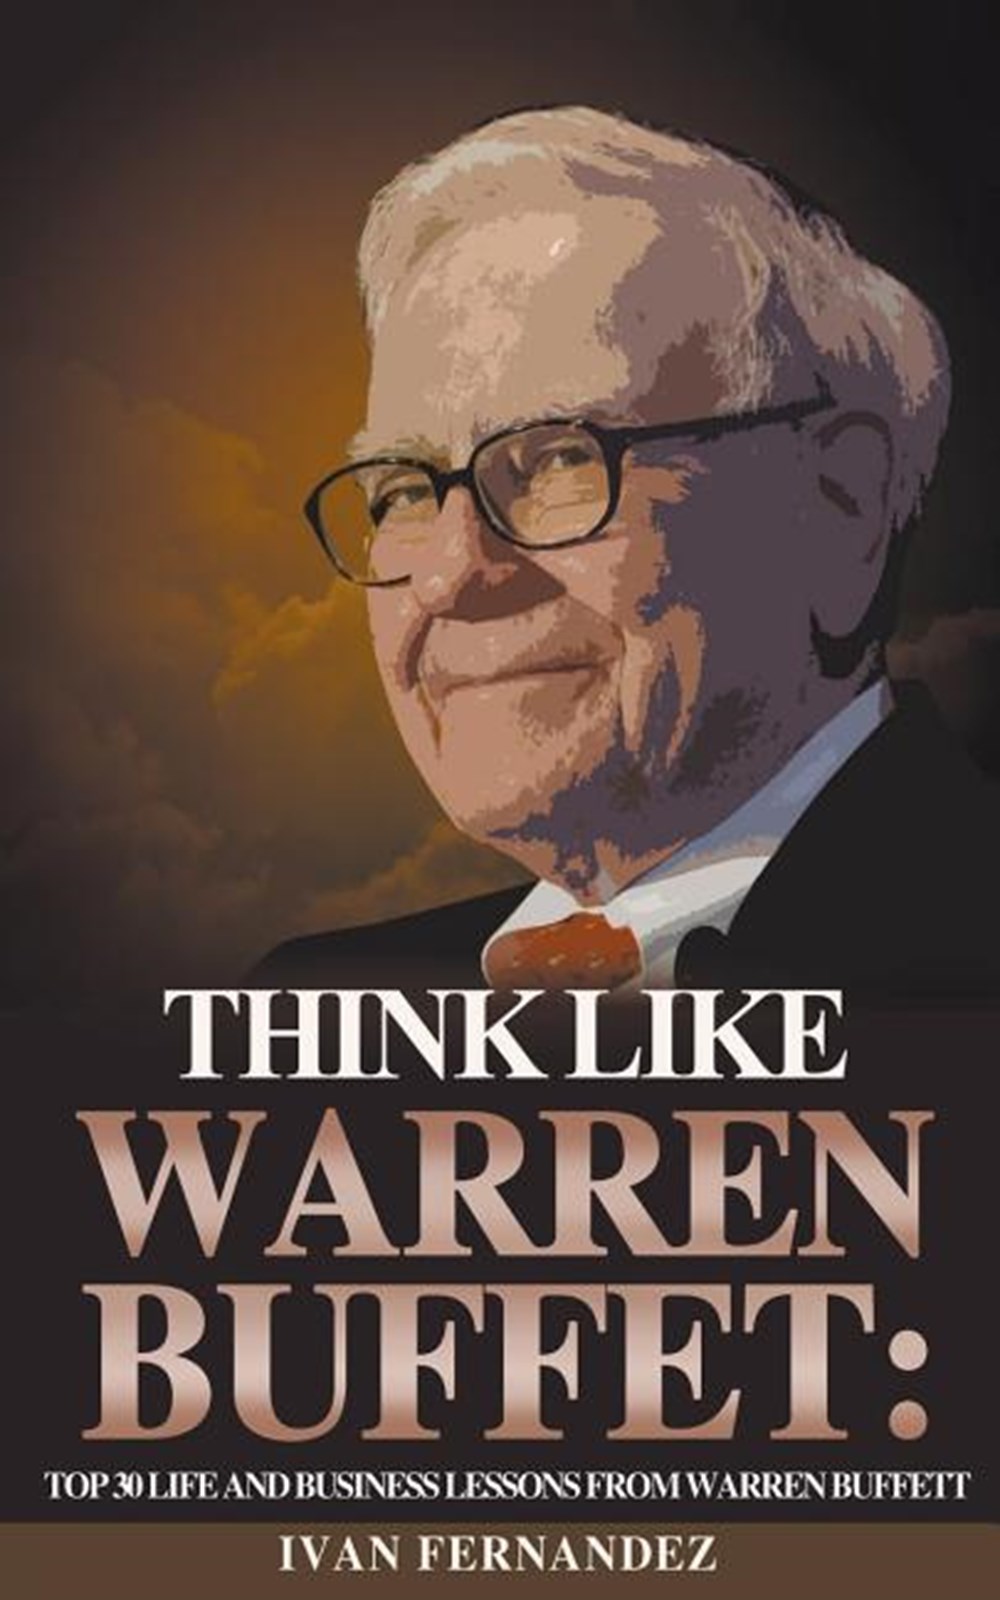 Think Like Warren Buffett Top 30 Life and Business Lessons from Warren Buffett